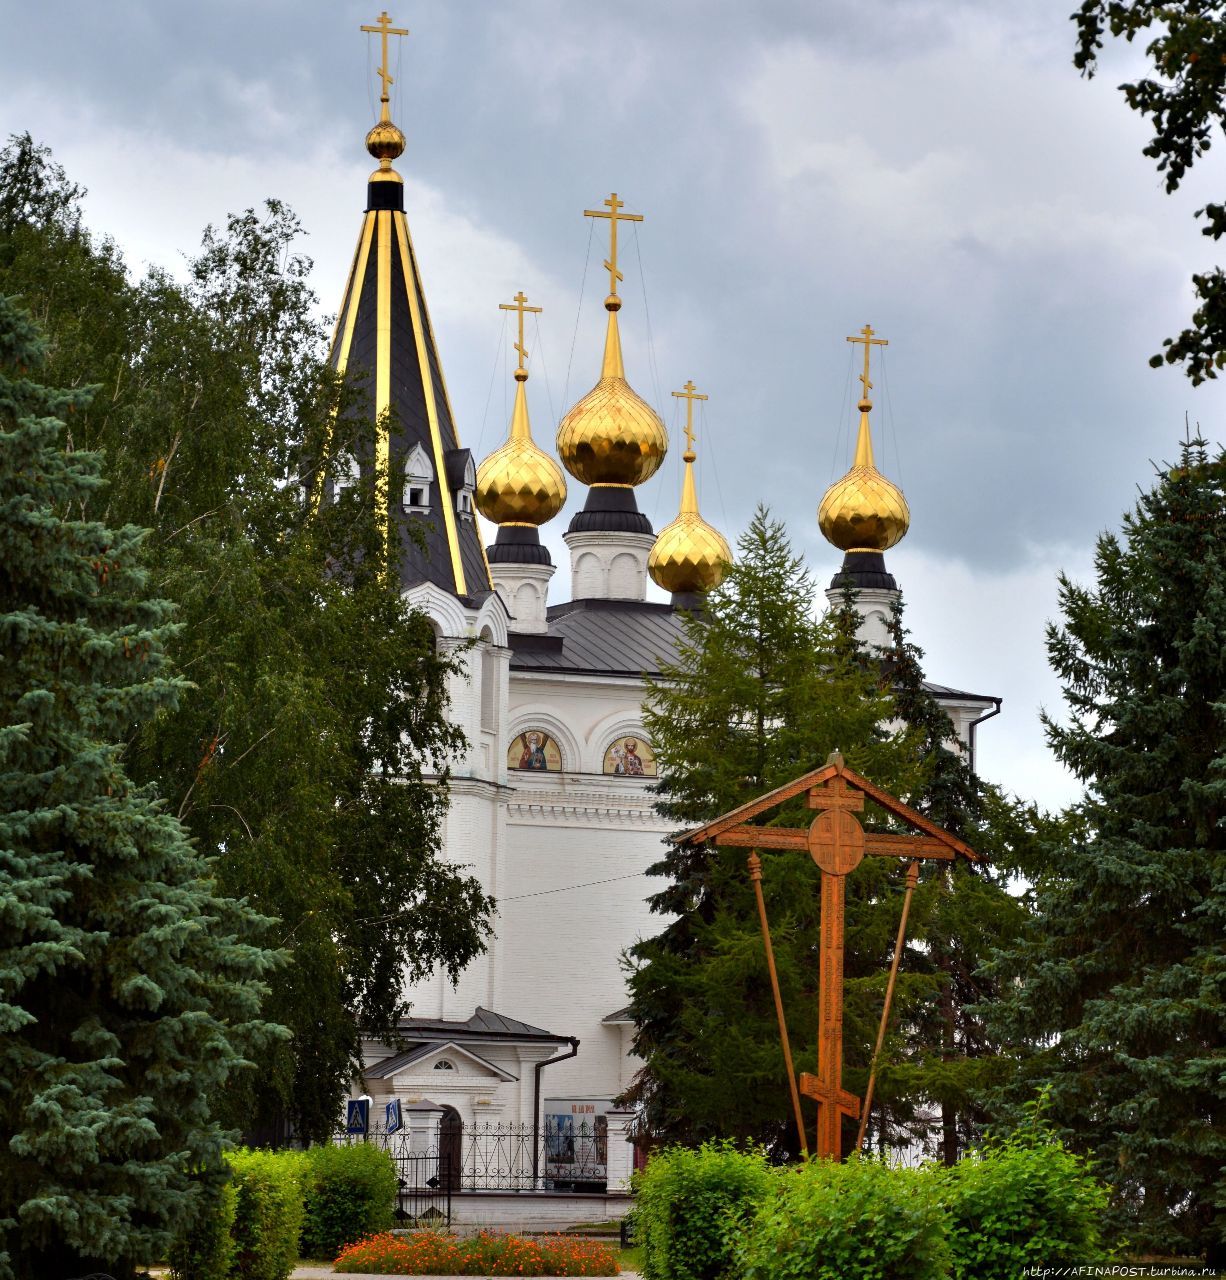 Феодоровский Монастырь / Feodorovskiy monastery